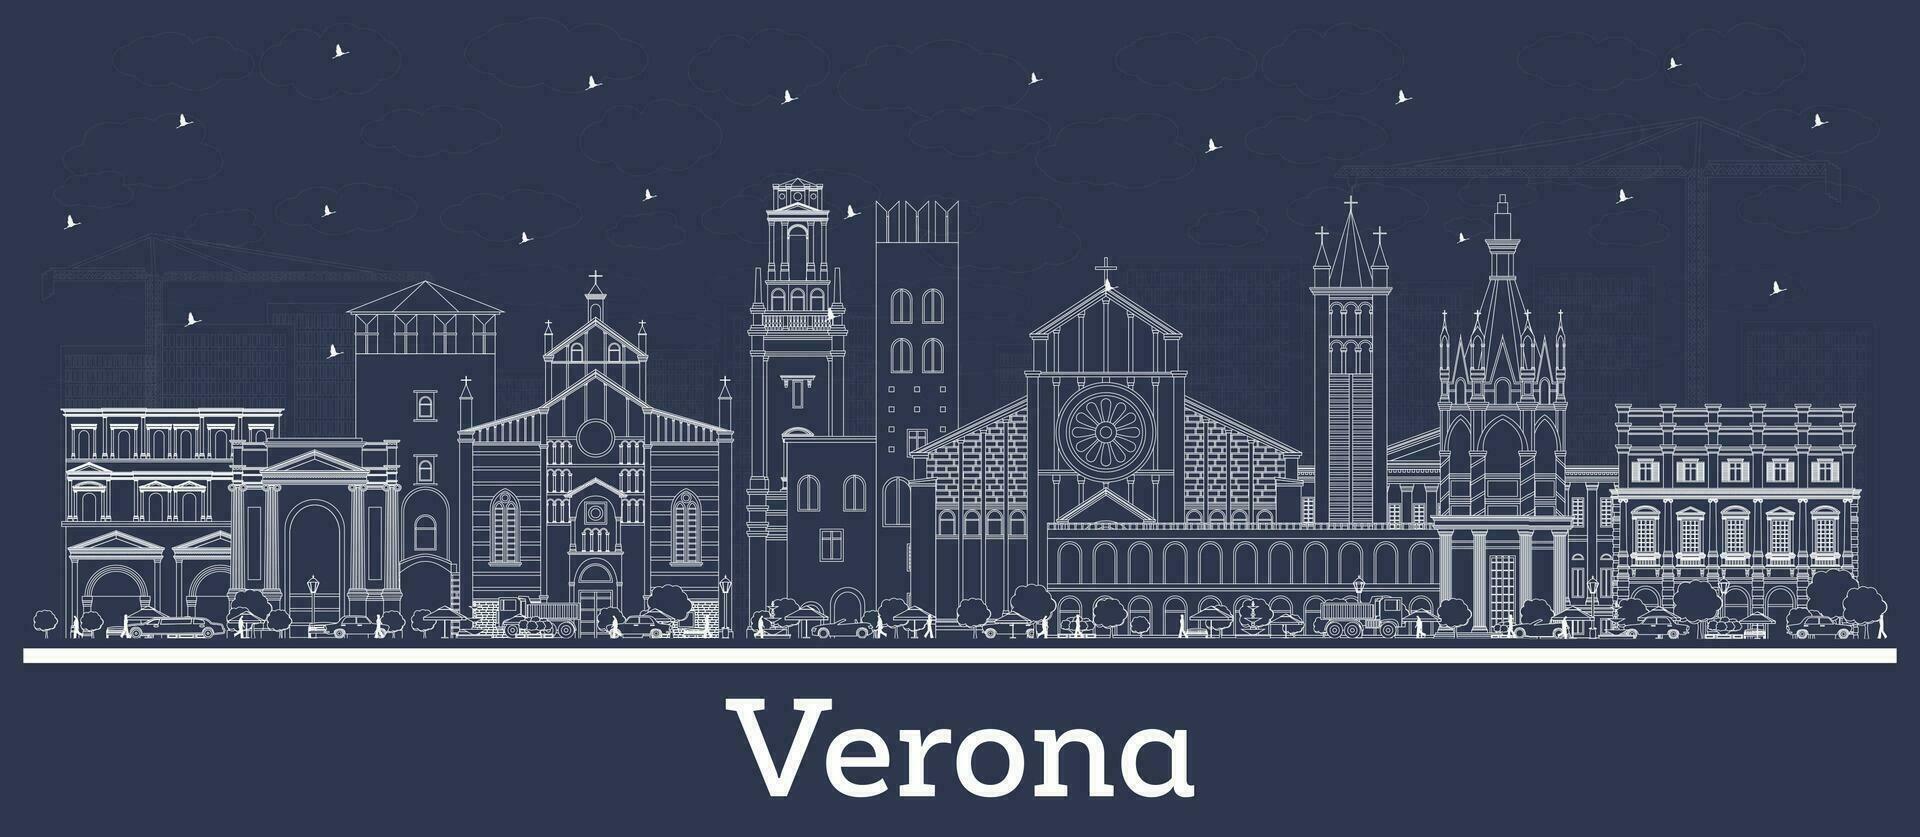 översikt verona Italien stad horisont med vit byggnader. företag resa och turism begrepp med historisk arkitektur. verona stadsbild med landmärken. vektor